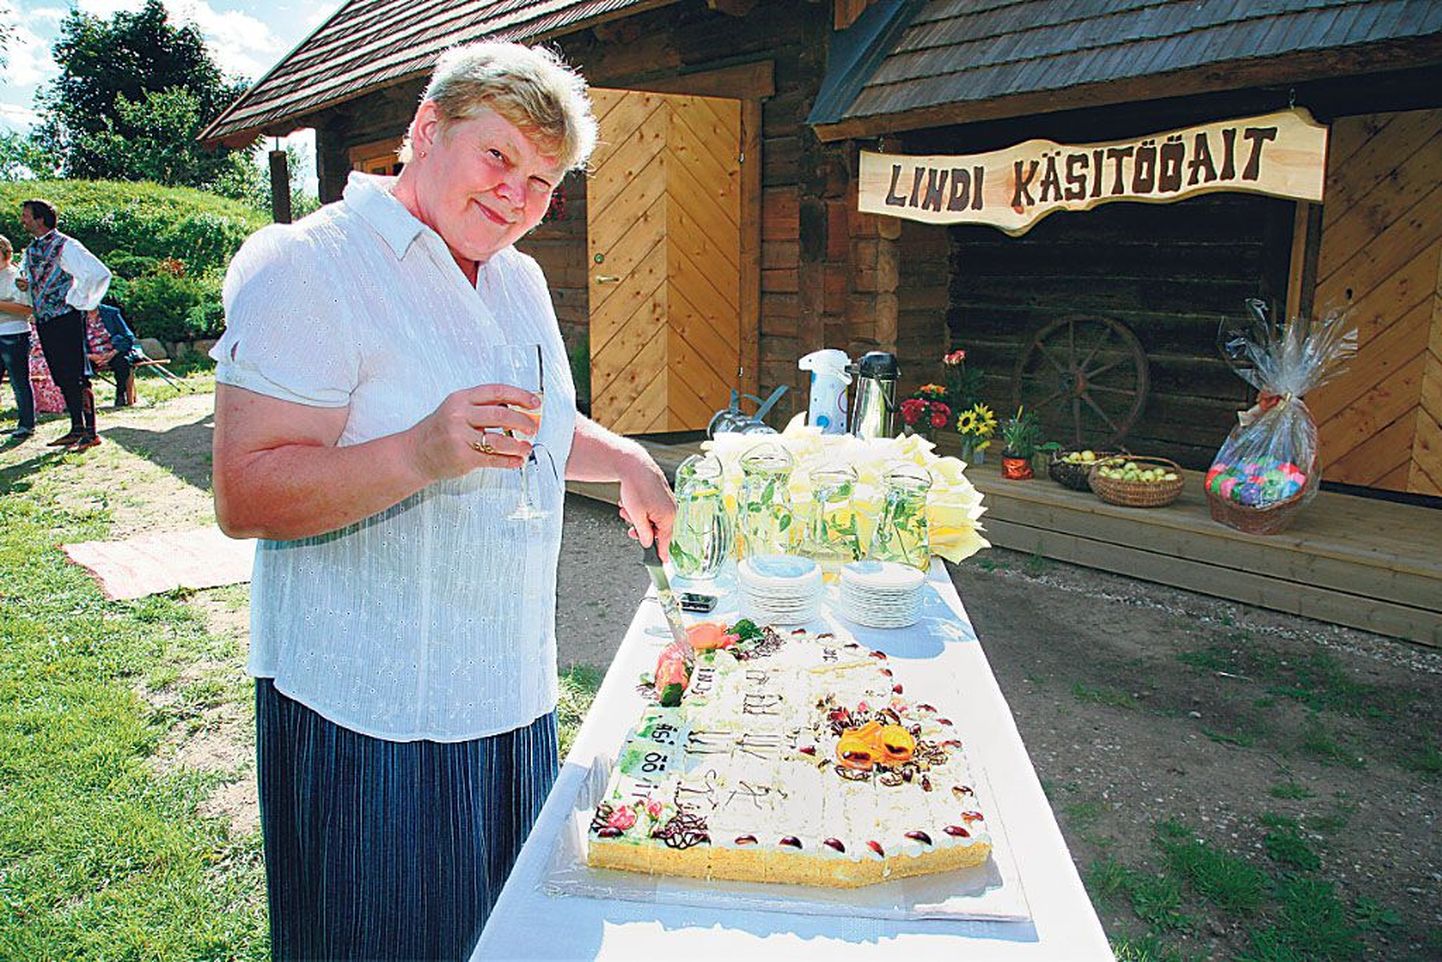 Lindil kodutalu õuel renoveeritud aida kui külarahva kasutusse mineva käsitööaida avamisel pakkus ettevõtmise eestvedaja ja projektikirjutaja Tiiu Sommer torti.